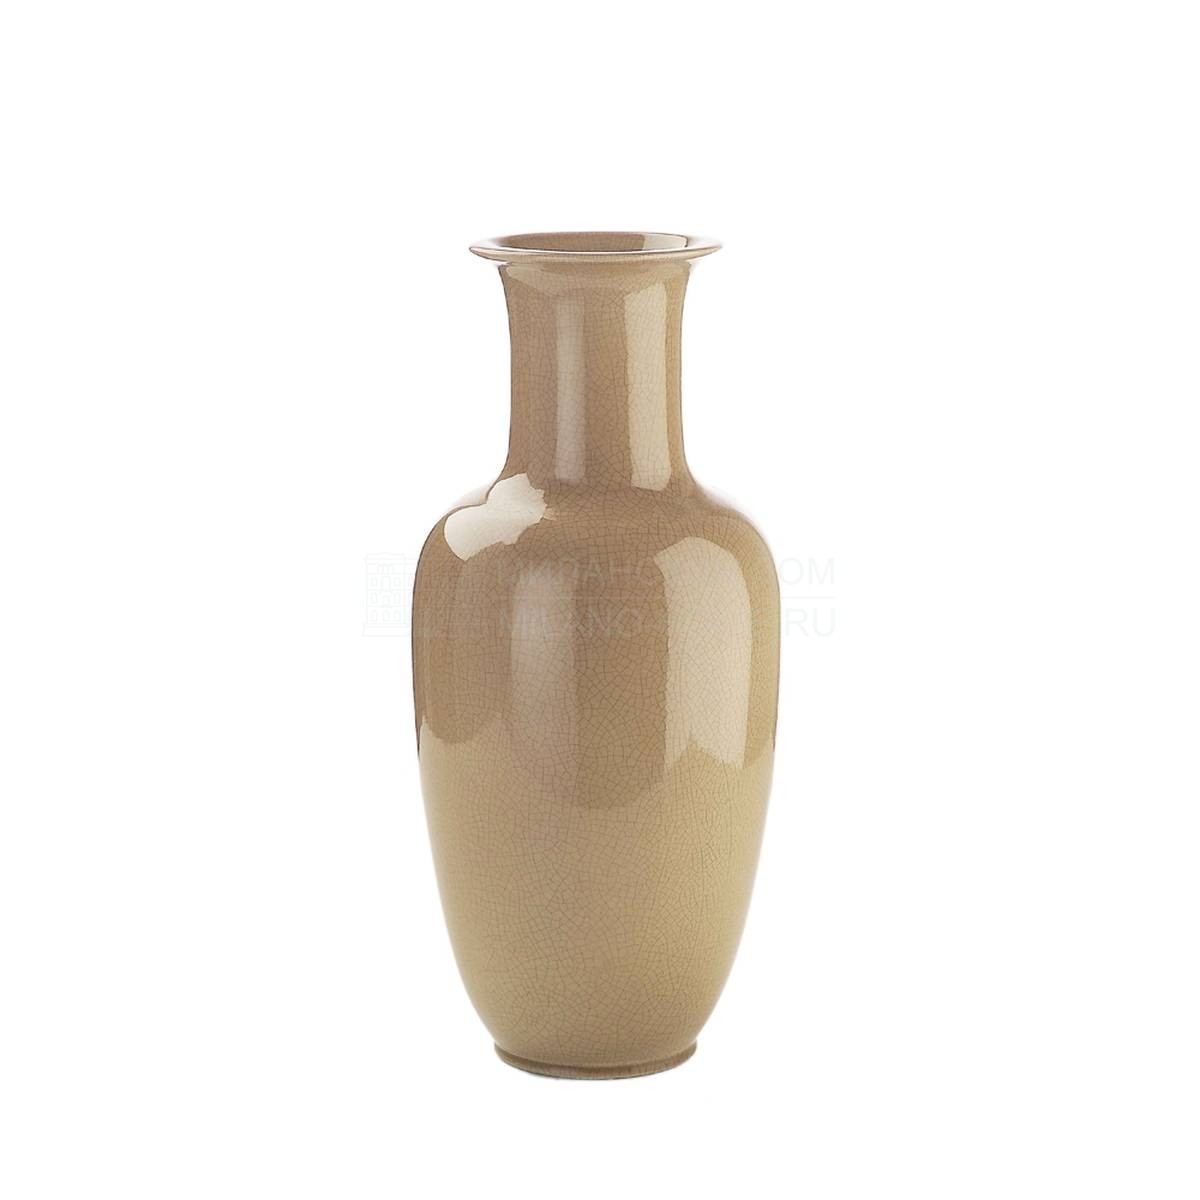 Ваза Bristol vase из Италии фабрики MARIONI